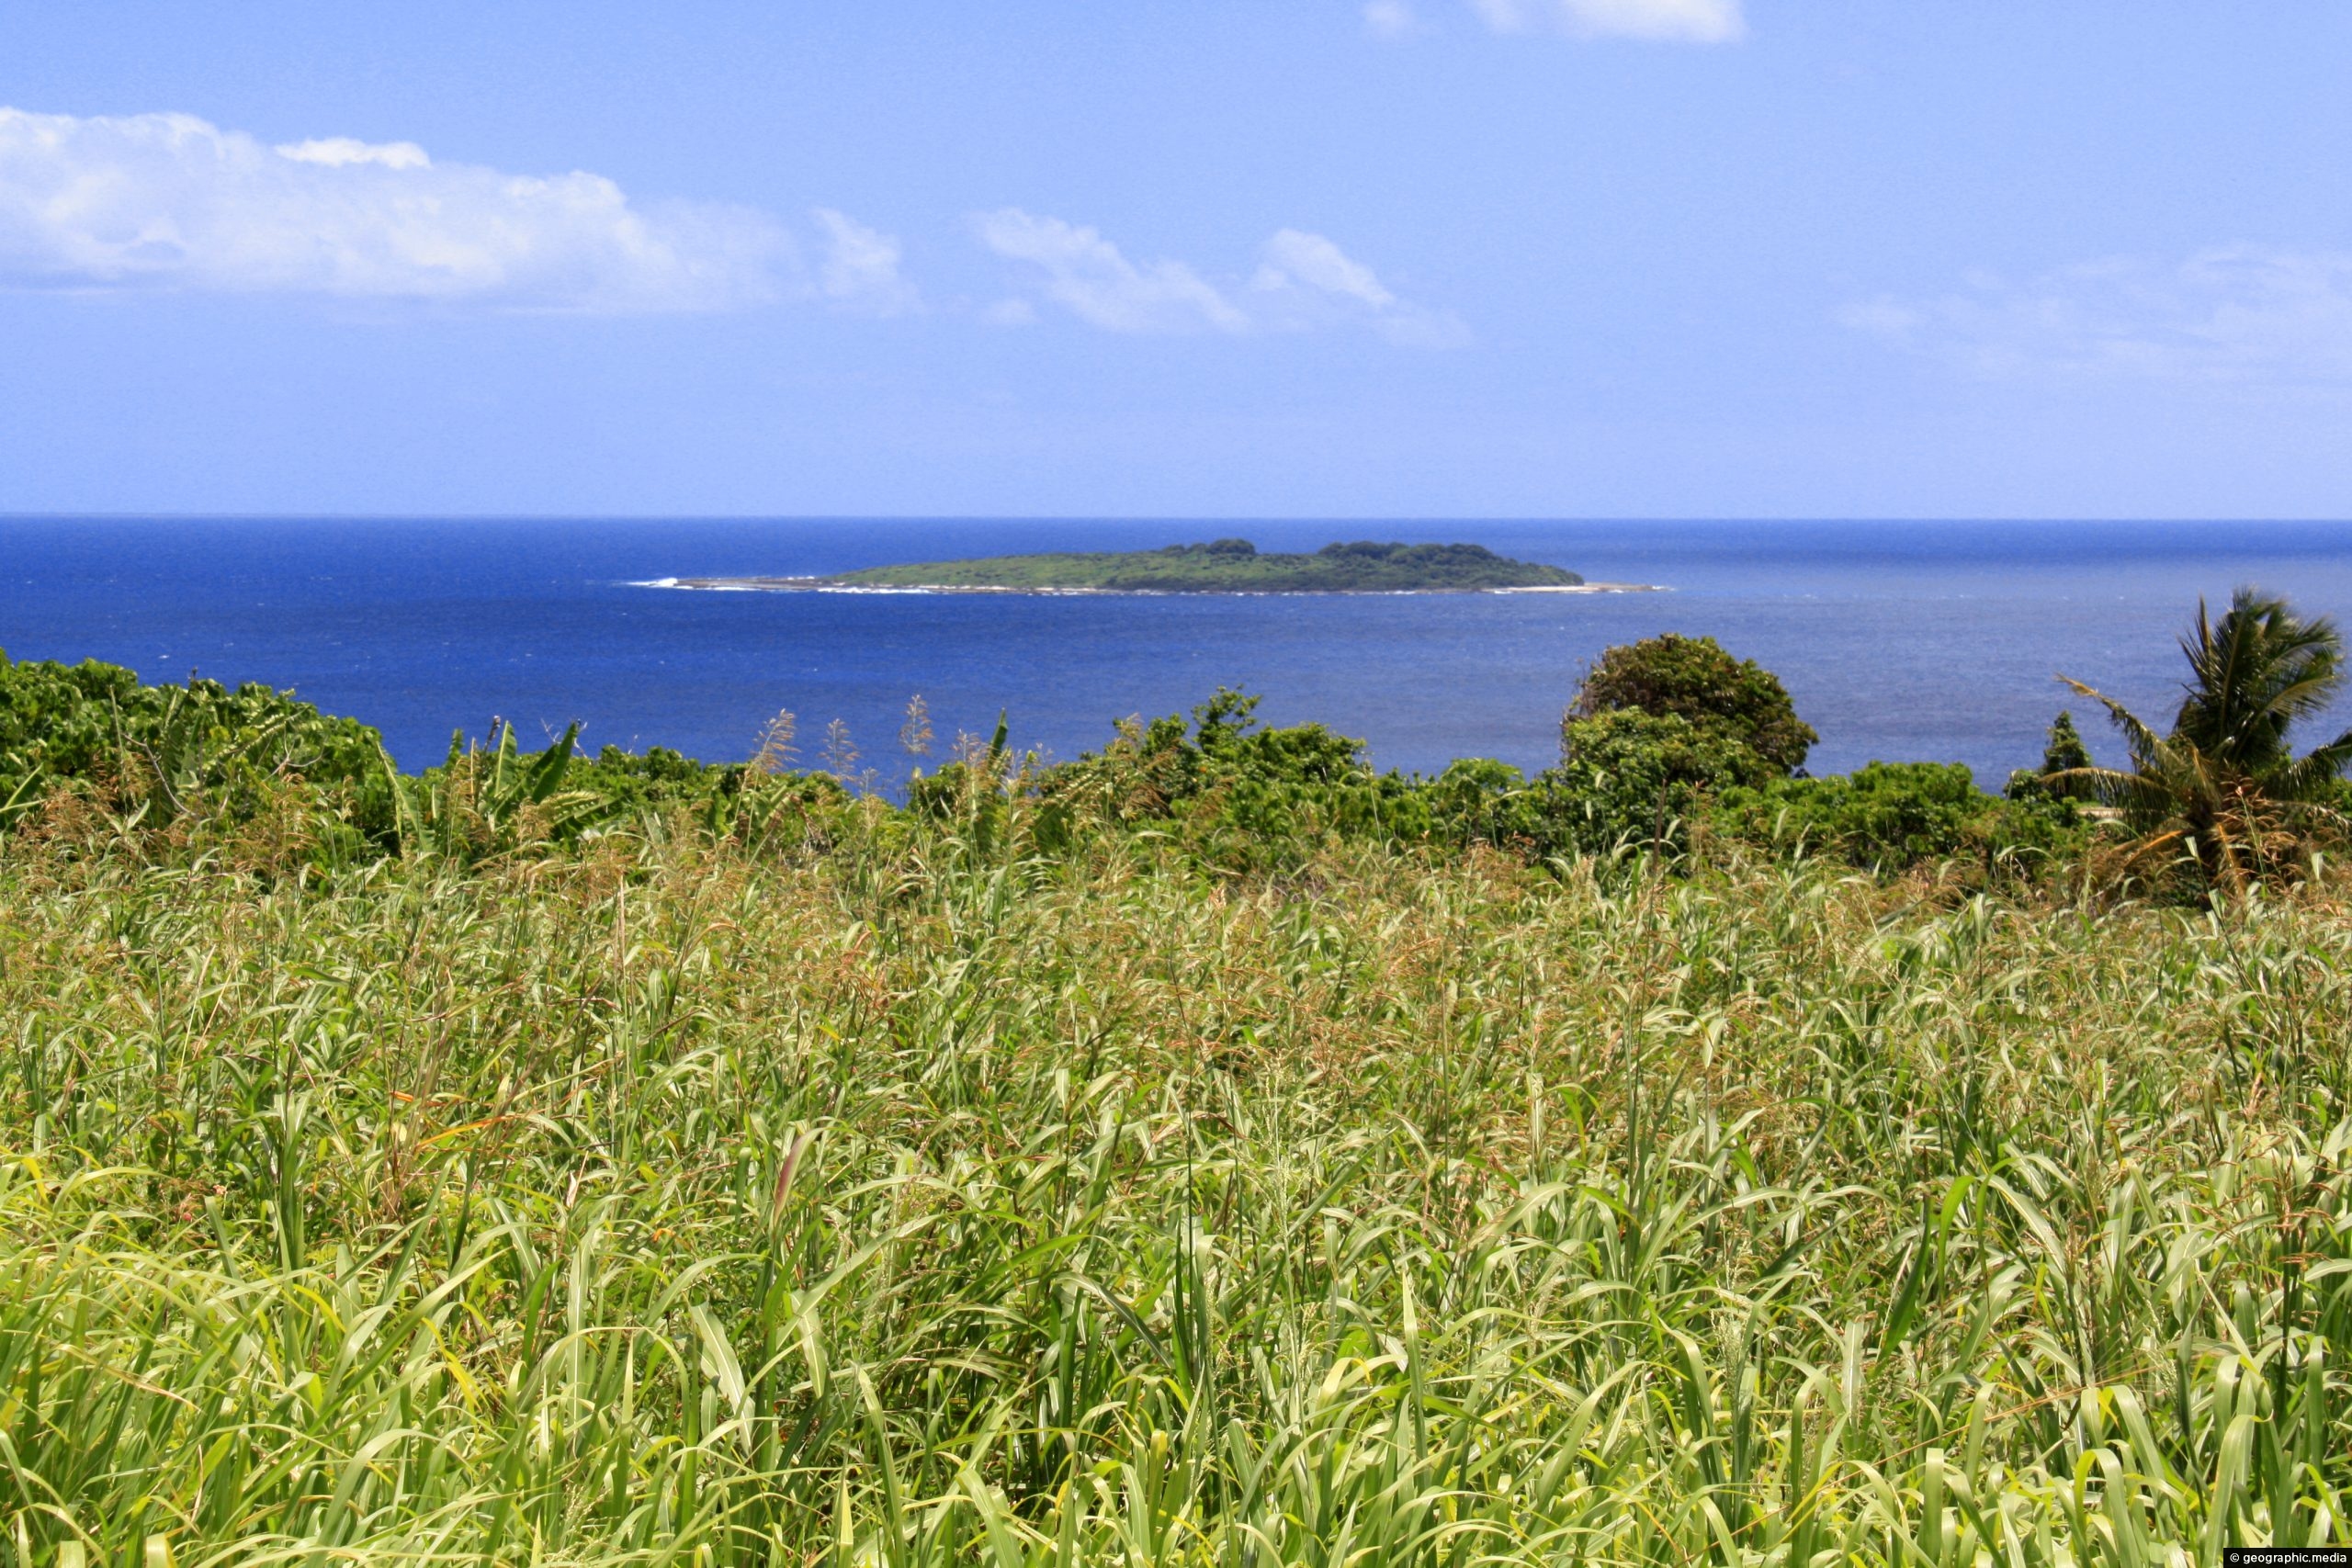 View of Kalau Island from Eua Island